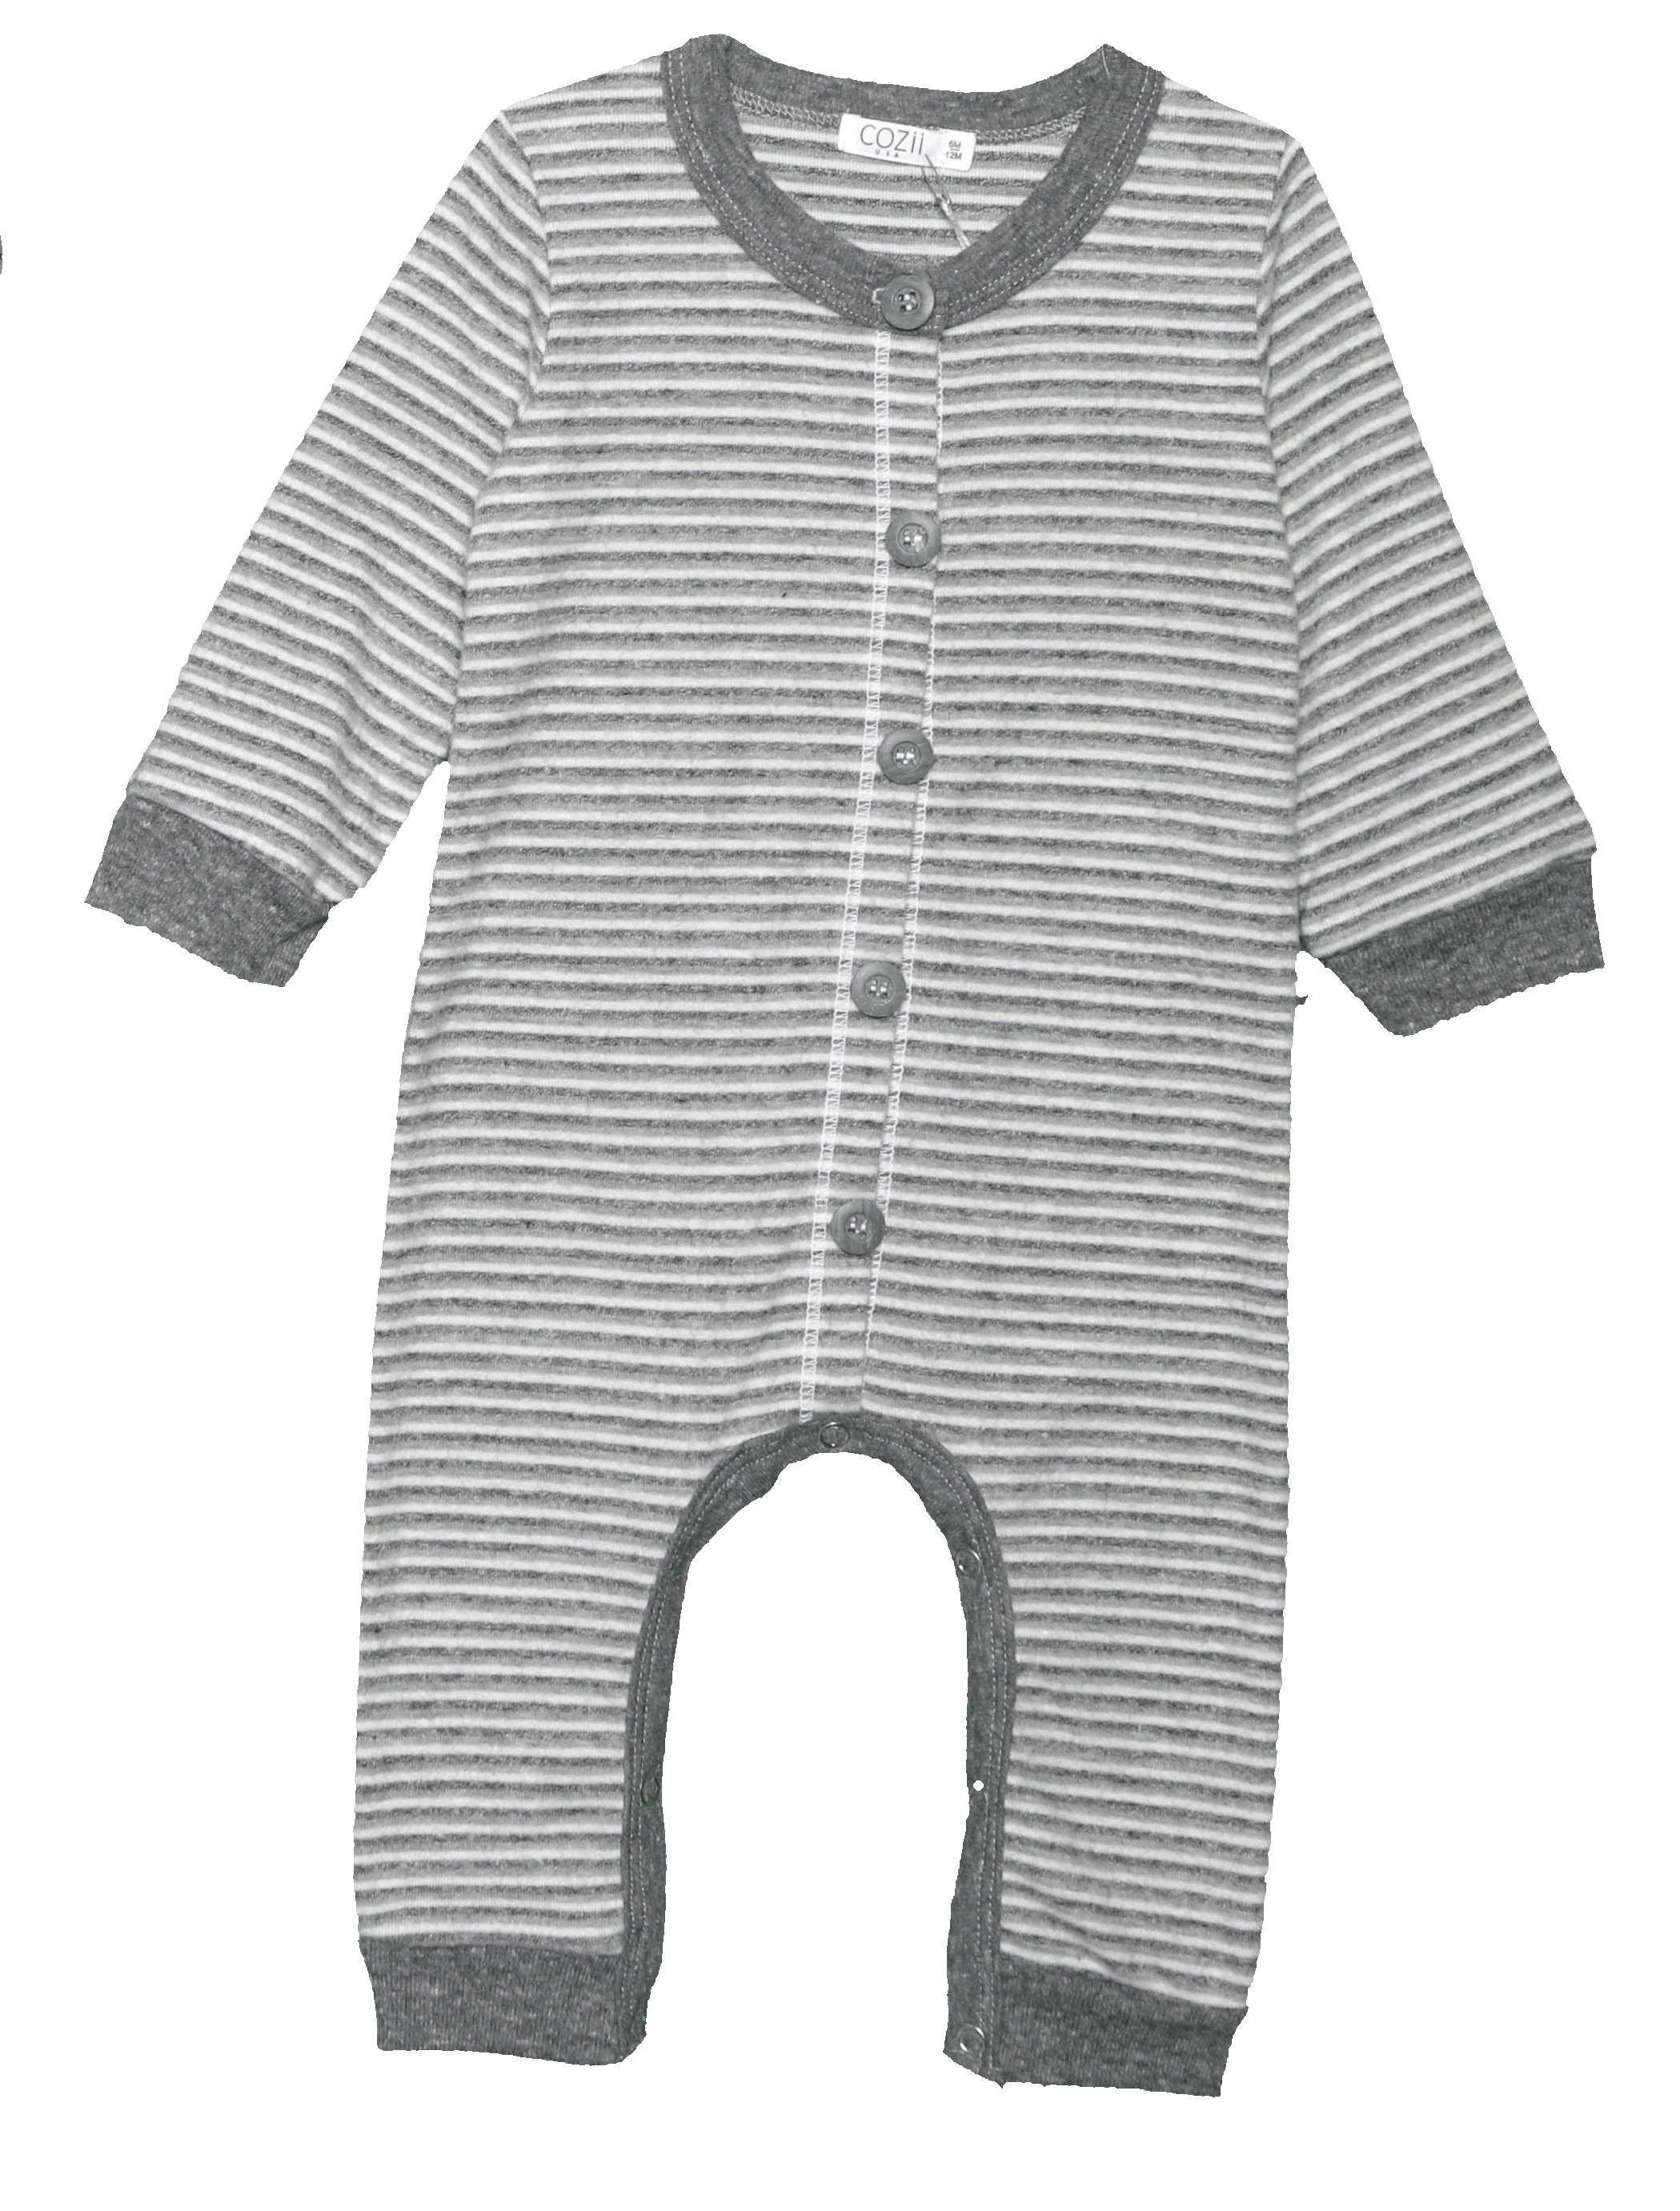 Grey Stripe Romper w/ Buttons - Twinkle Twinkle Little One